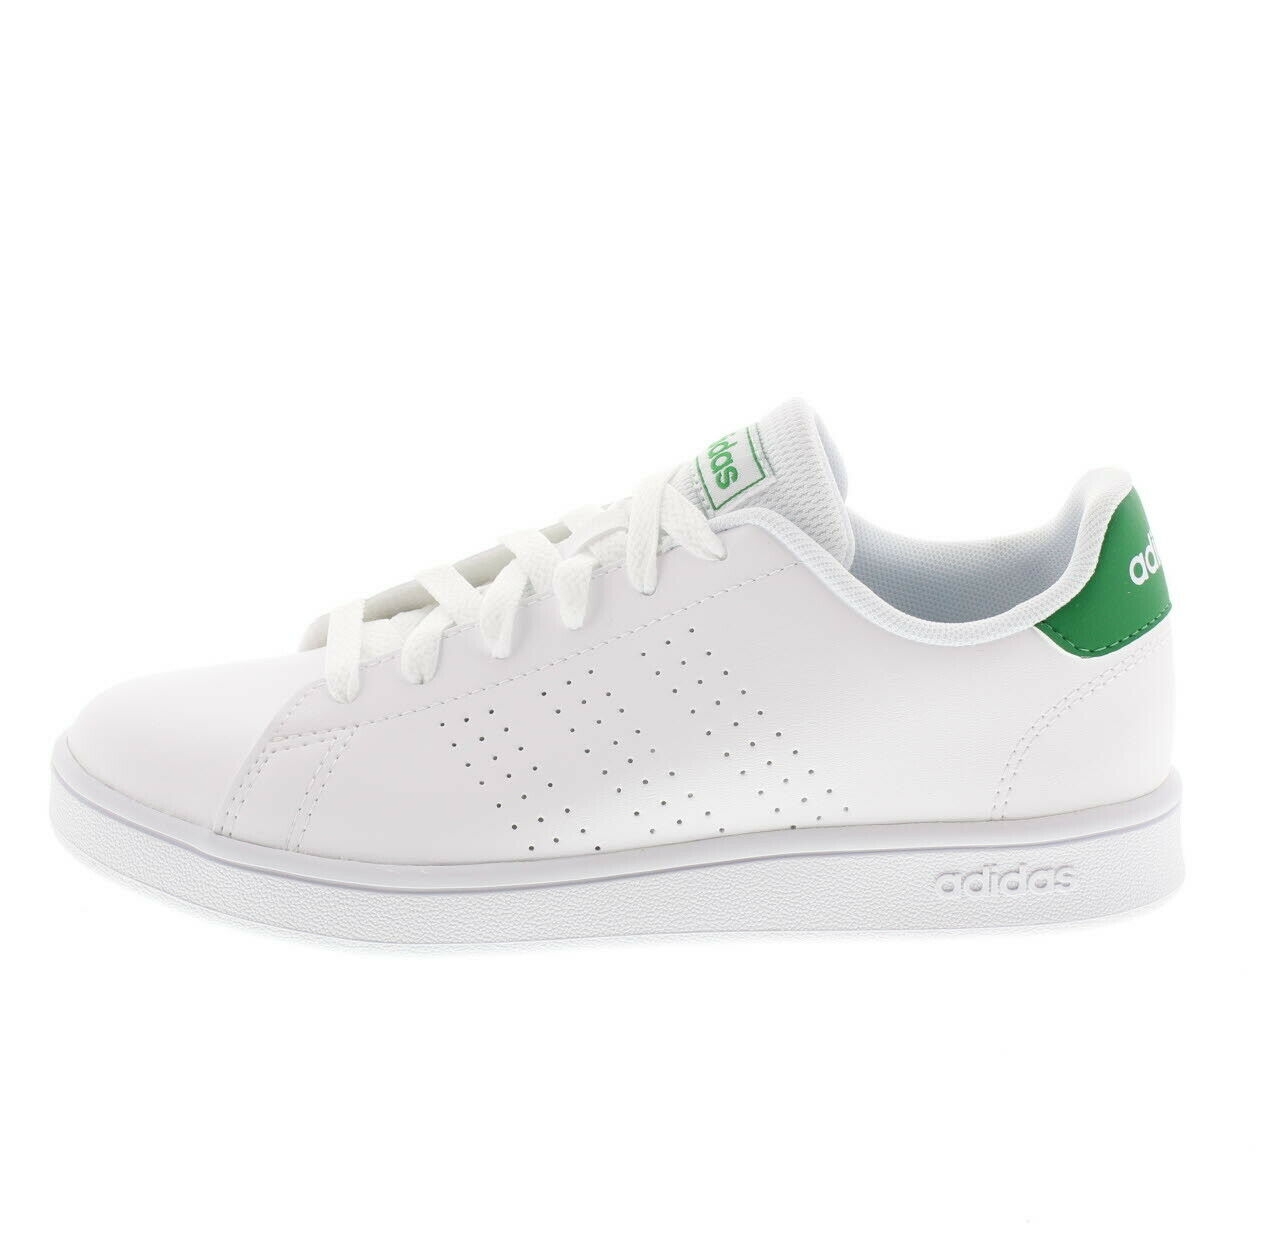 ADIDAS ADVANTAGE K EF0213 sneakers verde junior ragazzi | eBay